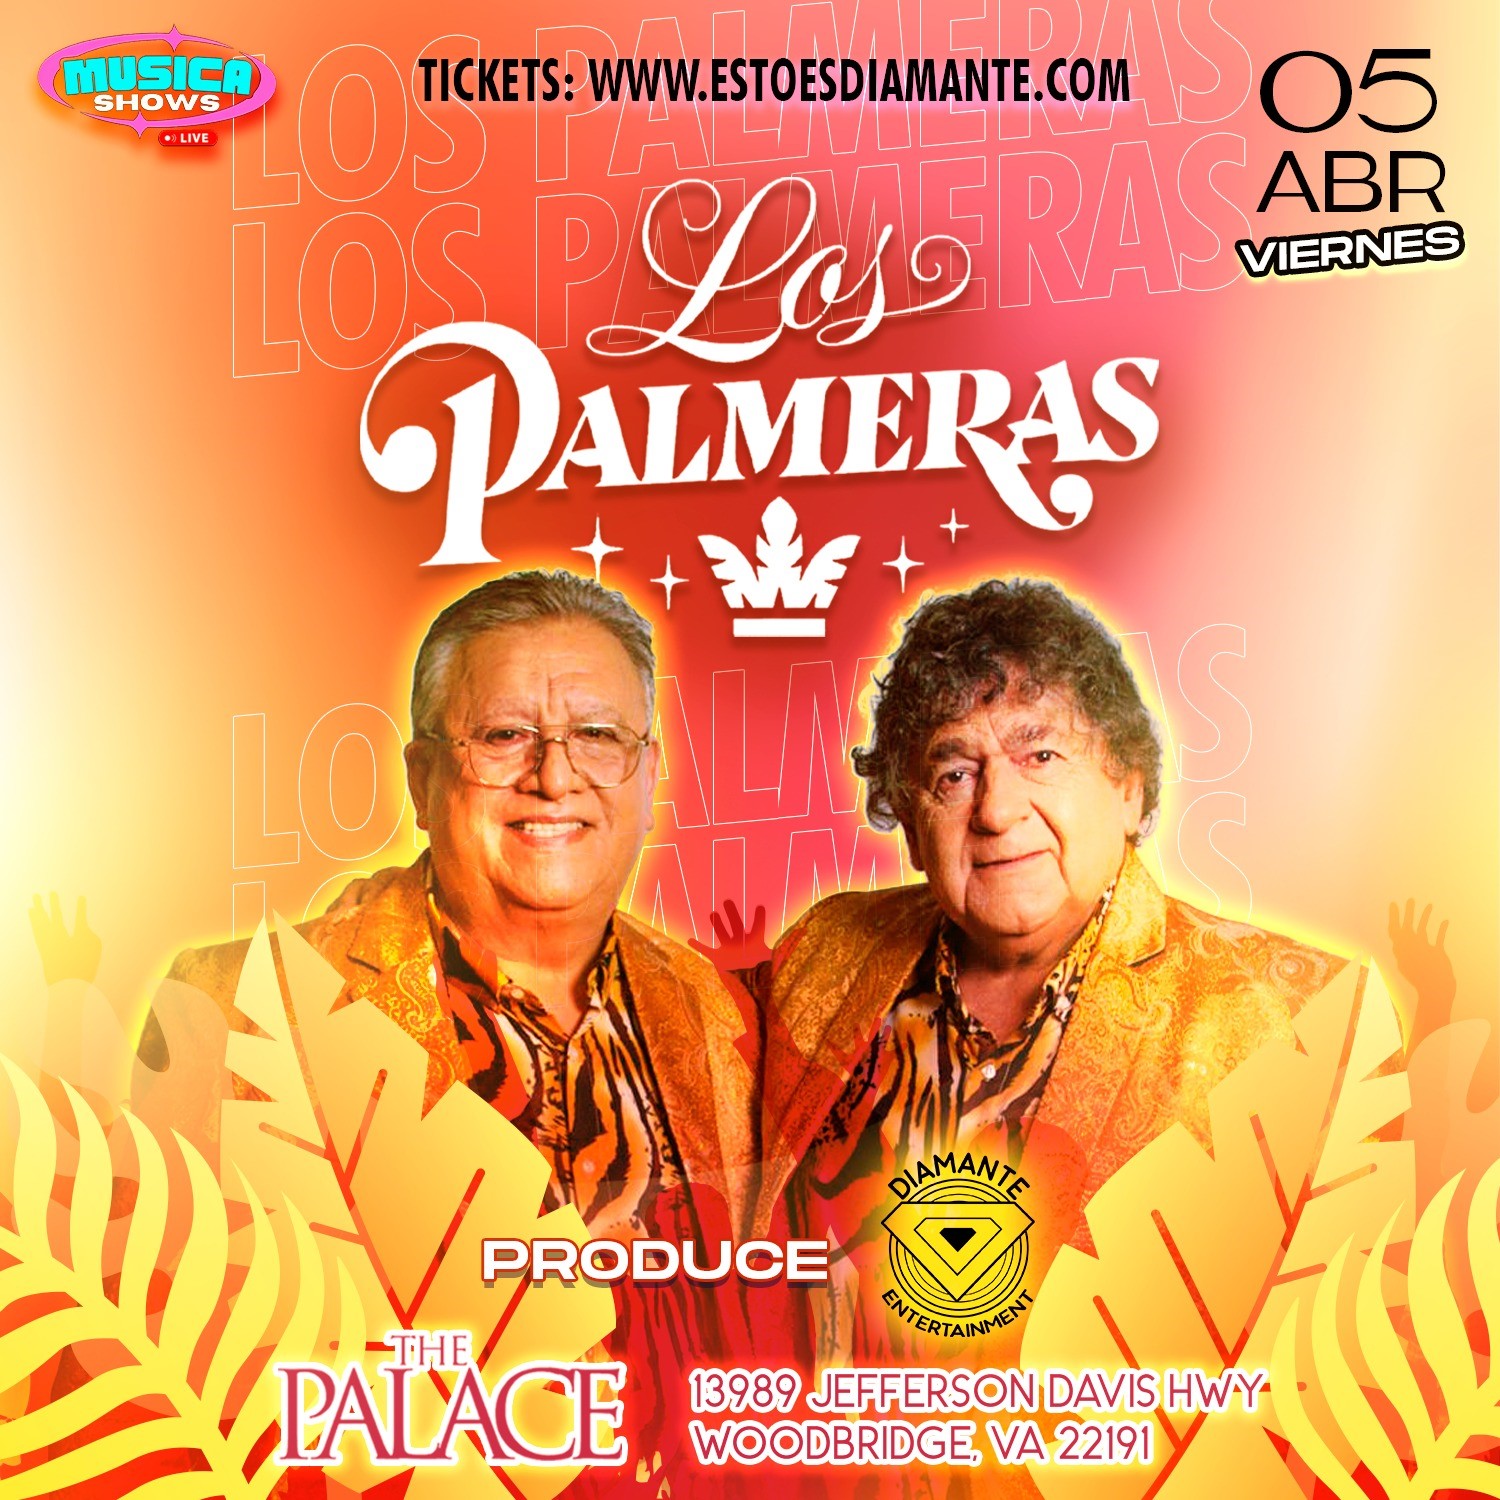 LOS PALMERAS EN CONCIERTO!  on Apr 05, 21:00@THE PALACE - Buy tickets and Get information on Diamante Entertainment 